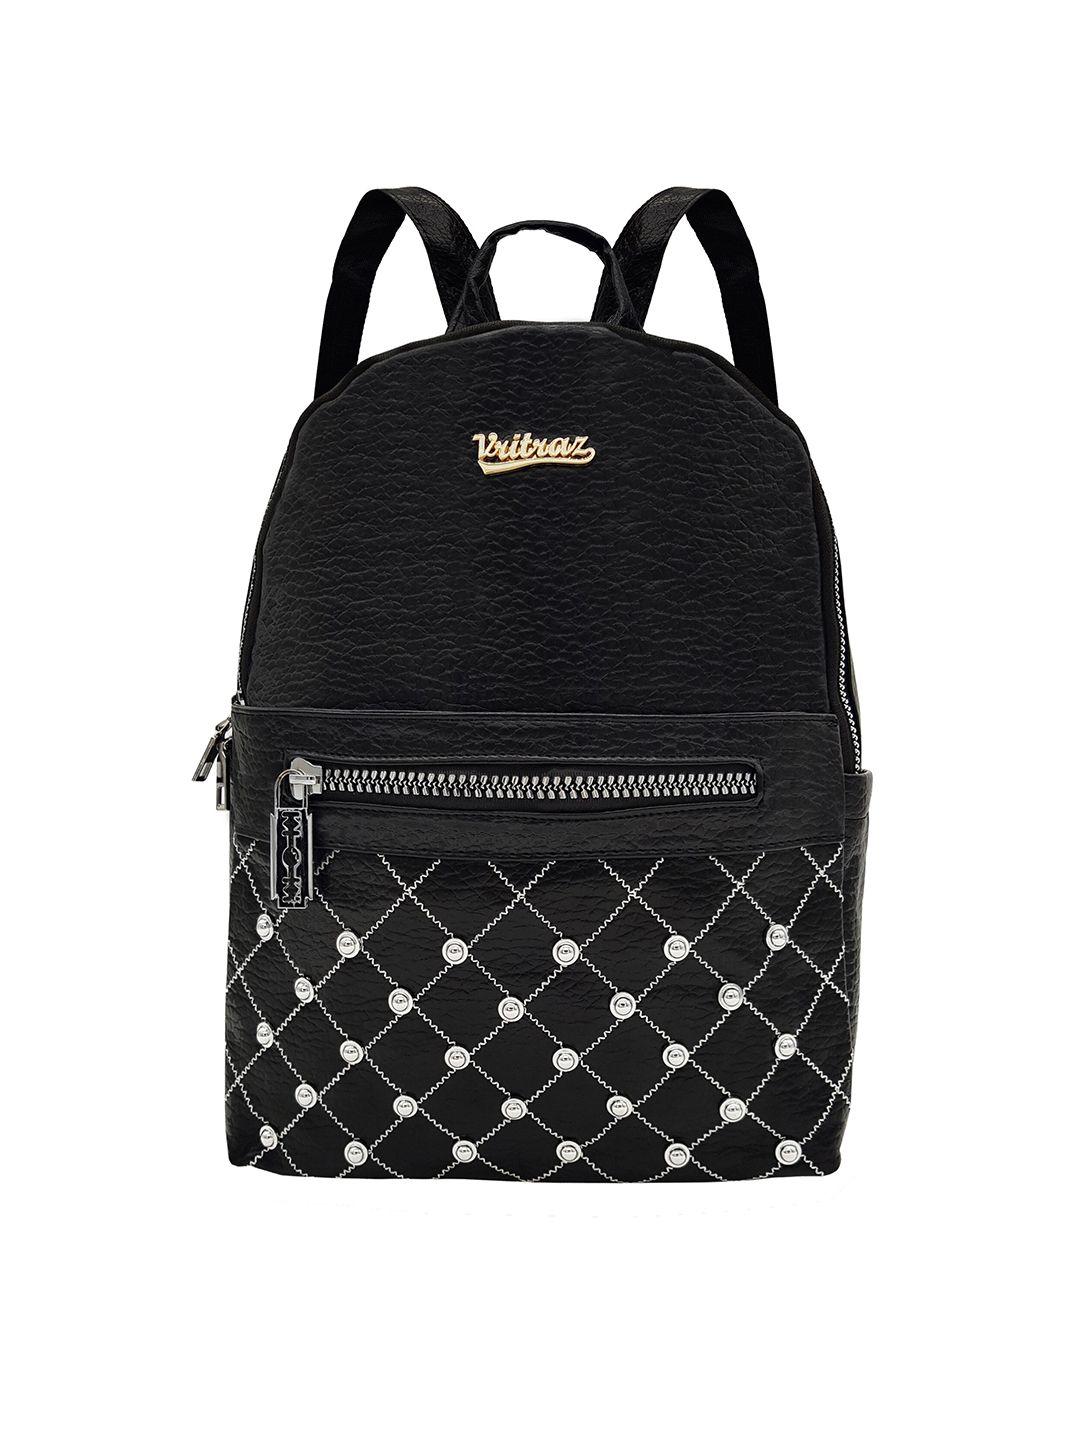 jenna women black & white backpack